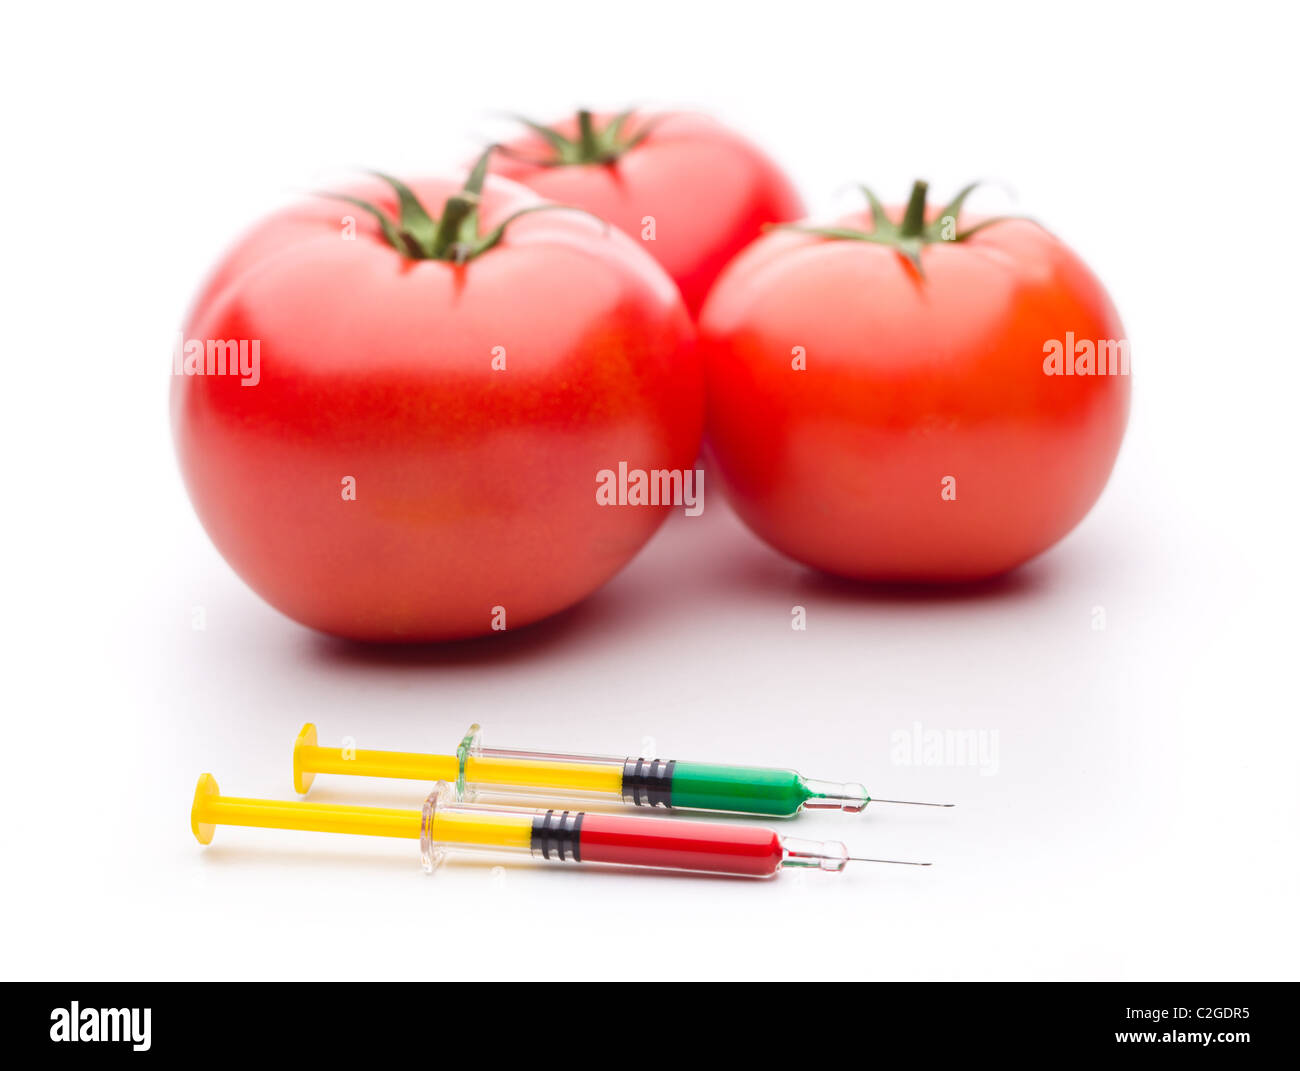 Drei Tomaten mit Syrigne. Nützlich für die gentechnische Veränderung Konzepte. Stockfoto